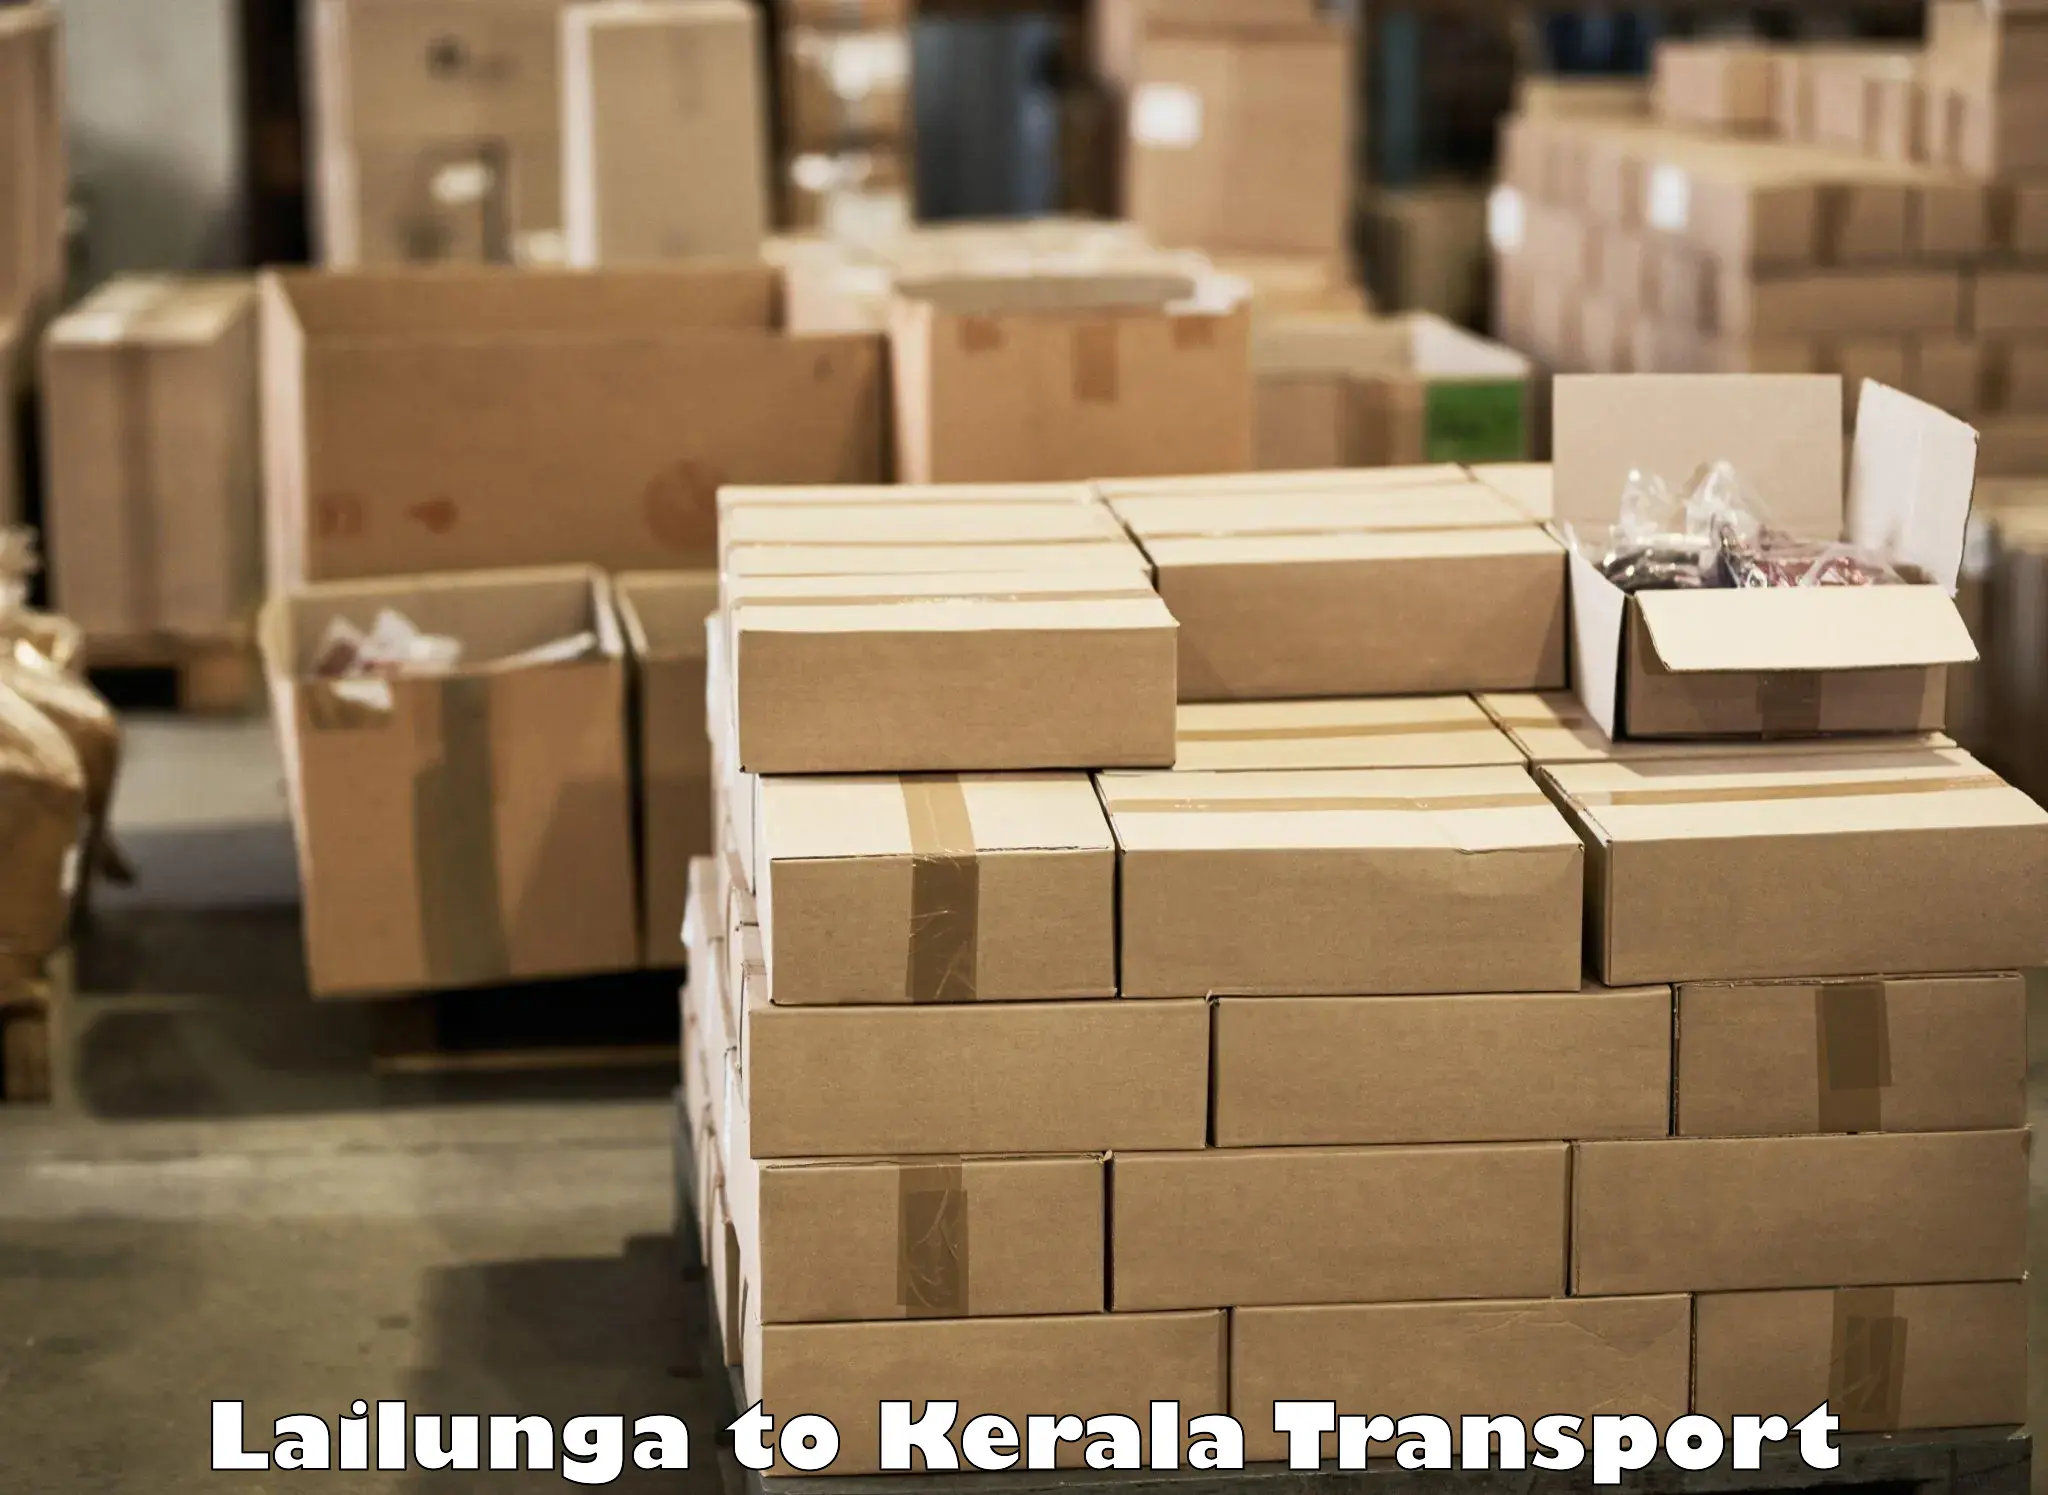 Truck transport companies in India Lailunga to Cherpulassery